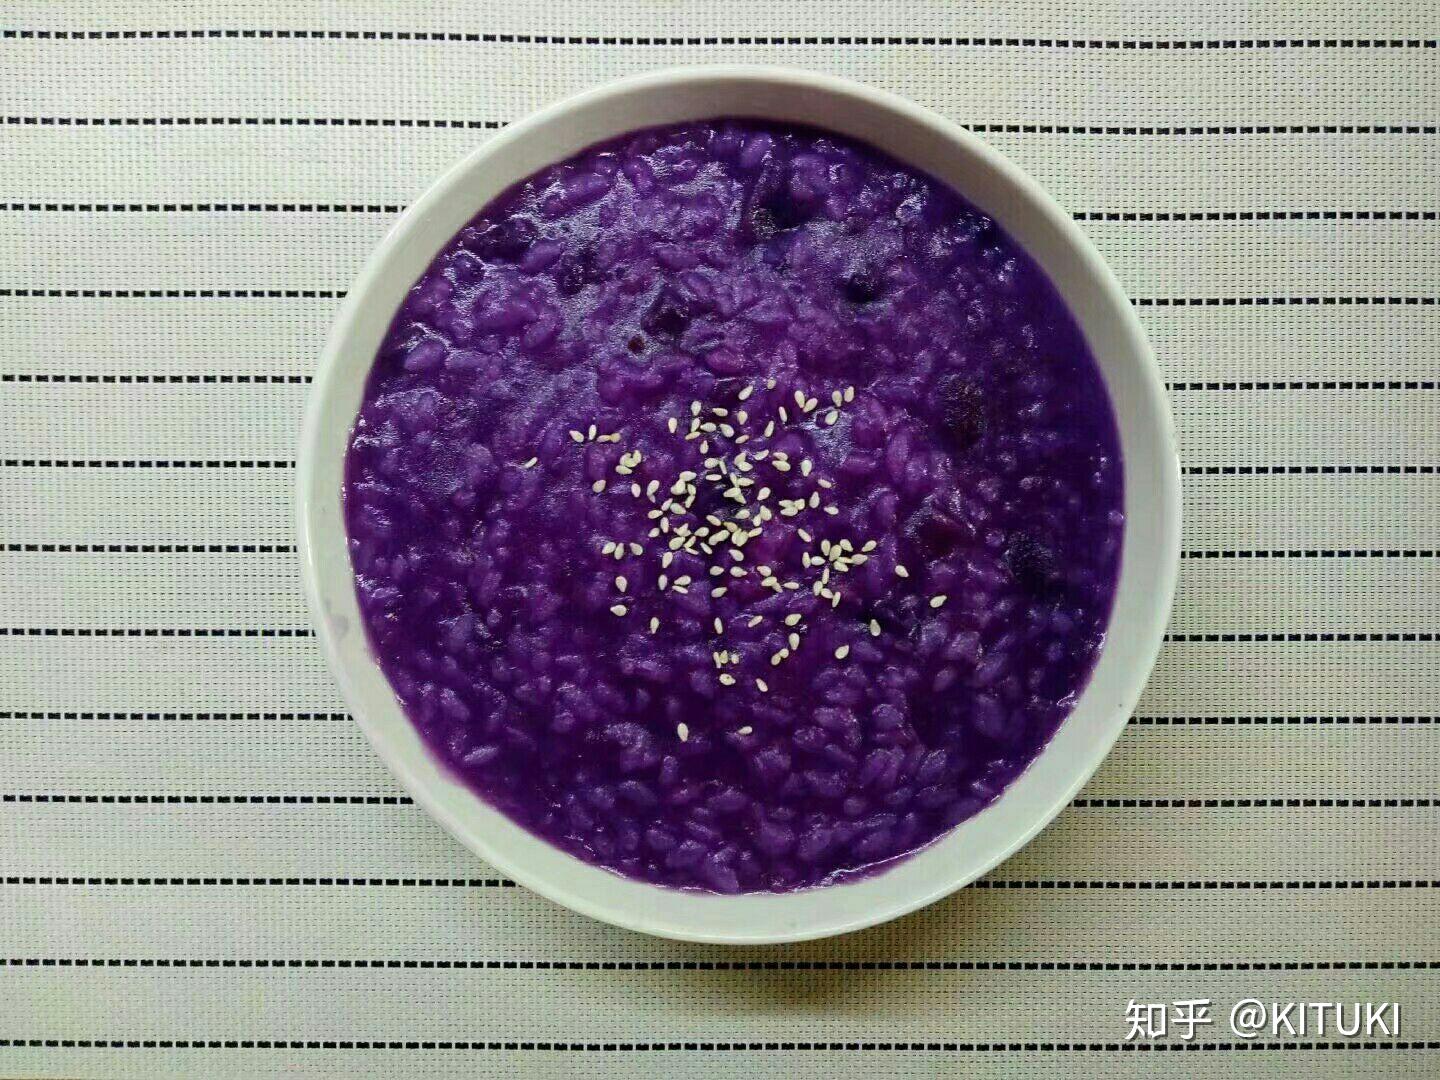 美味紫薯粥圖片素材-JPG圖片尺寸5616 × 3744px-高清圖案500960297-zh.lovepik.com